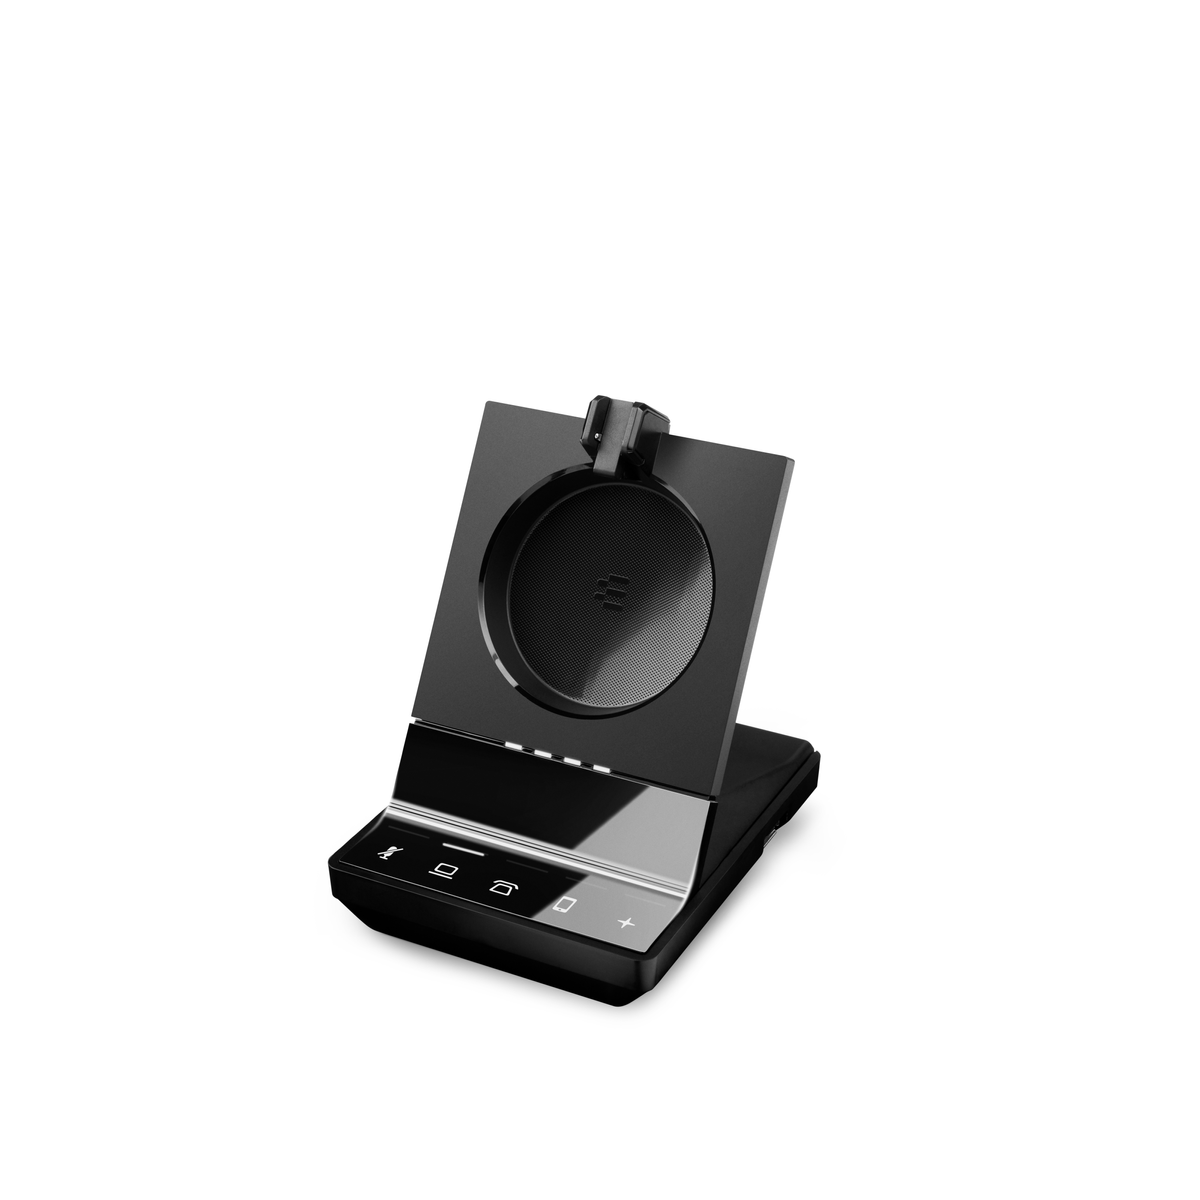 SENNHEISER 1001026, Schwarz On-ear Bluetooth Kopfhörer